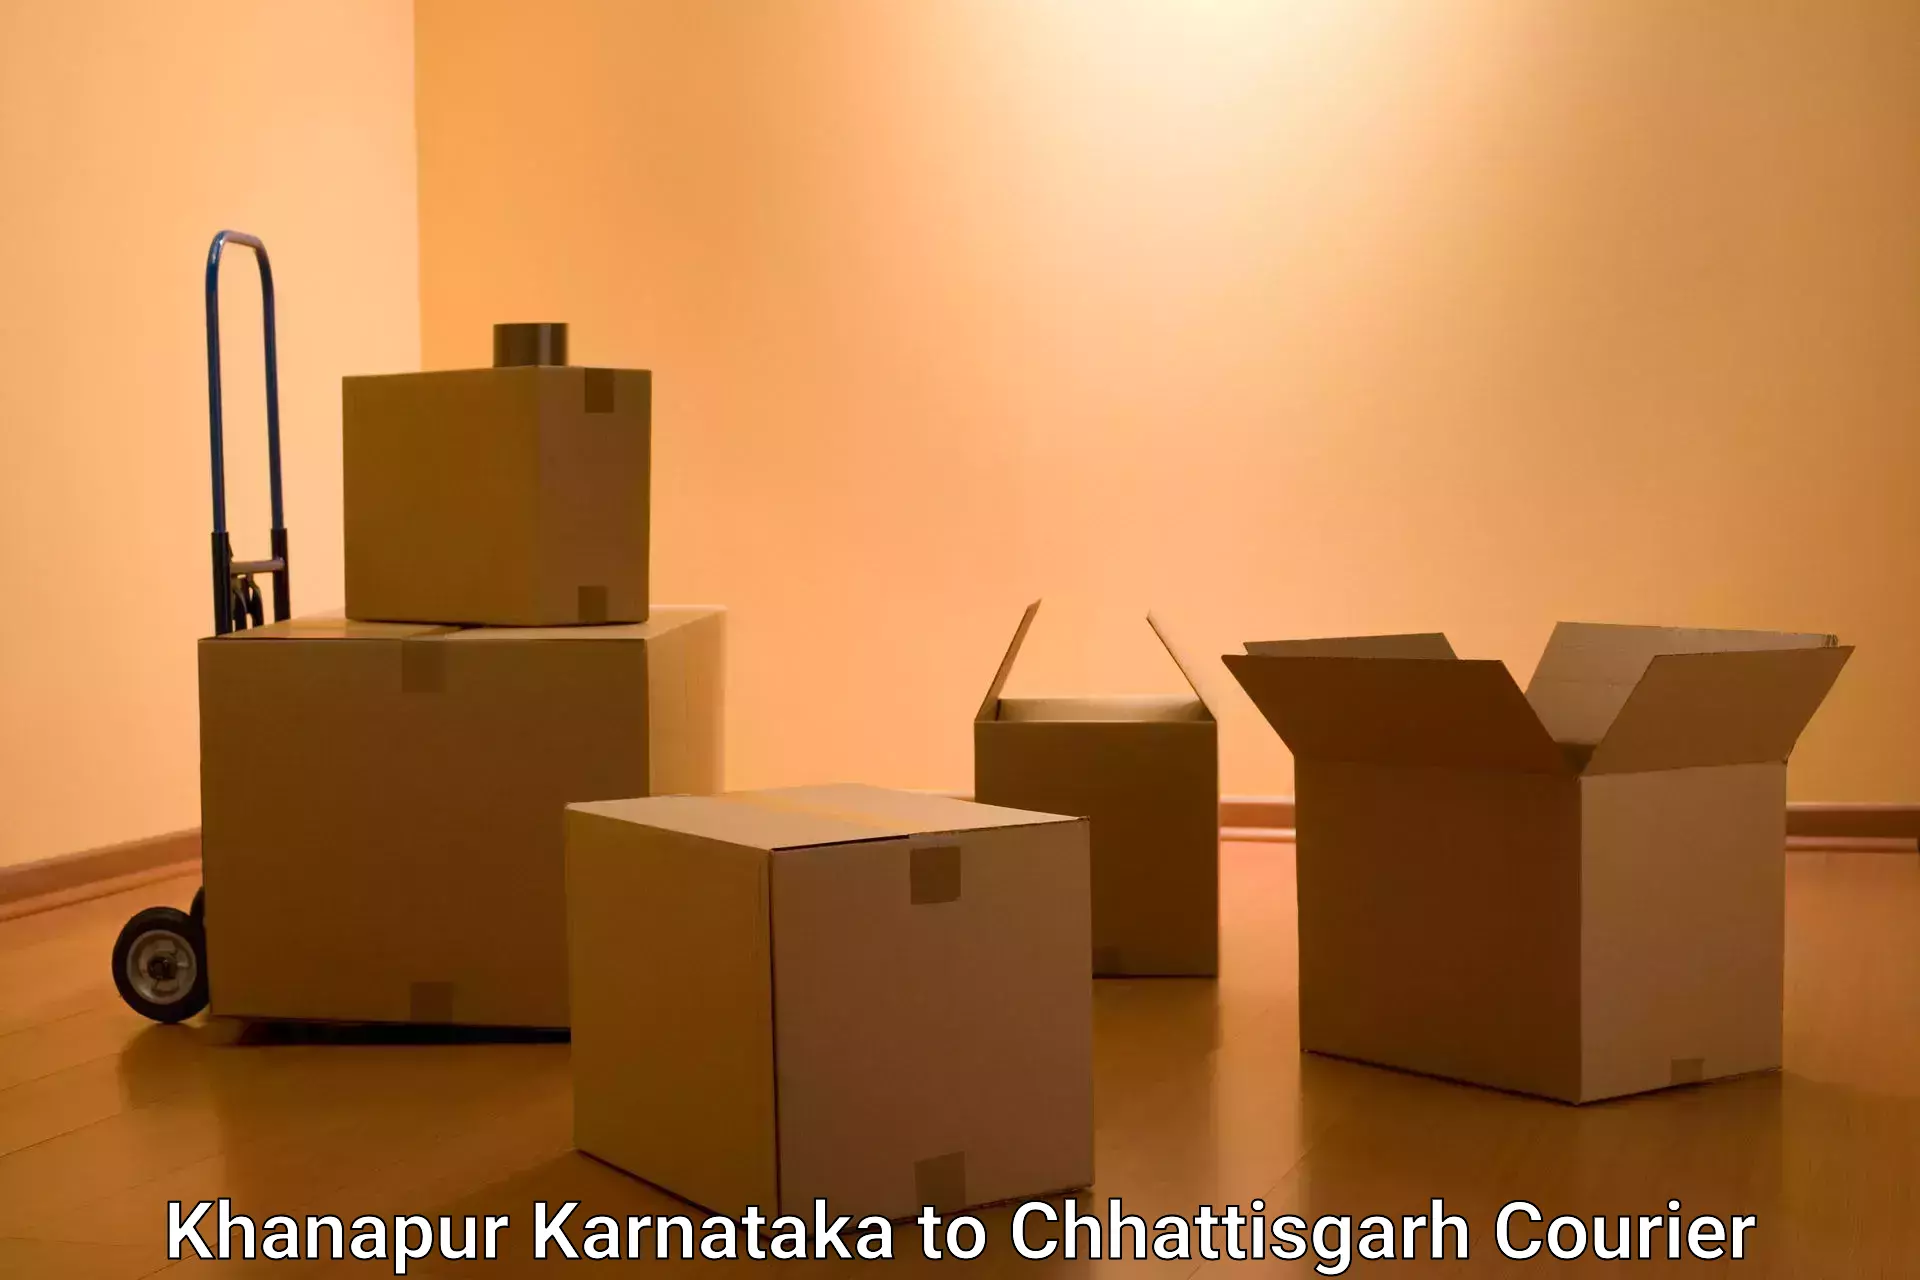 Nationwide parcel services Khanapur Karnataka to Bhatapara